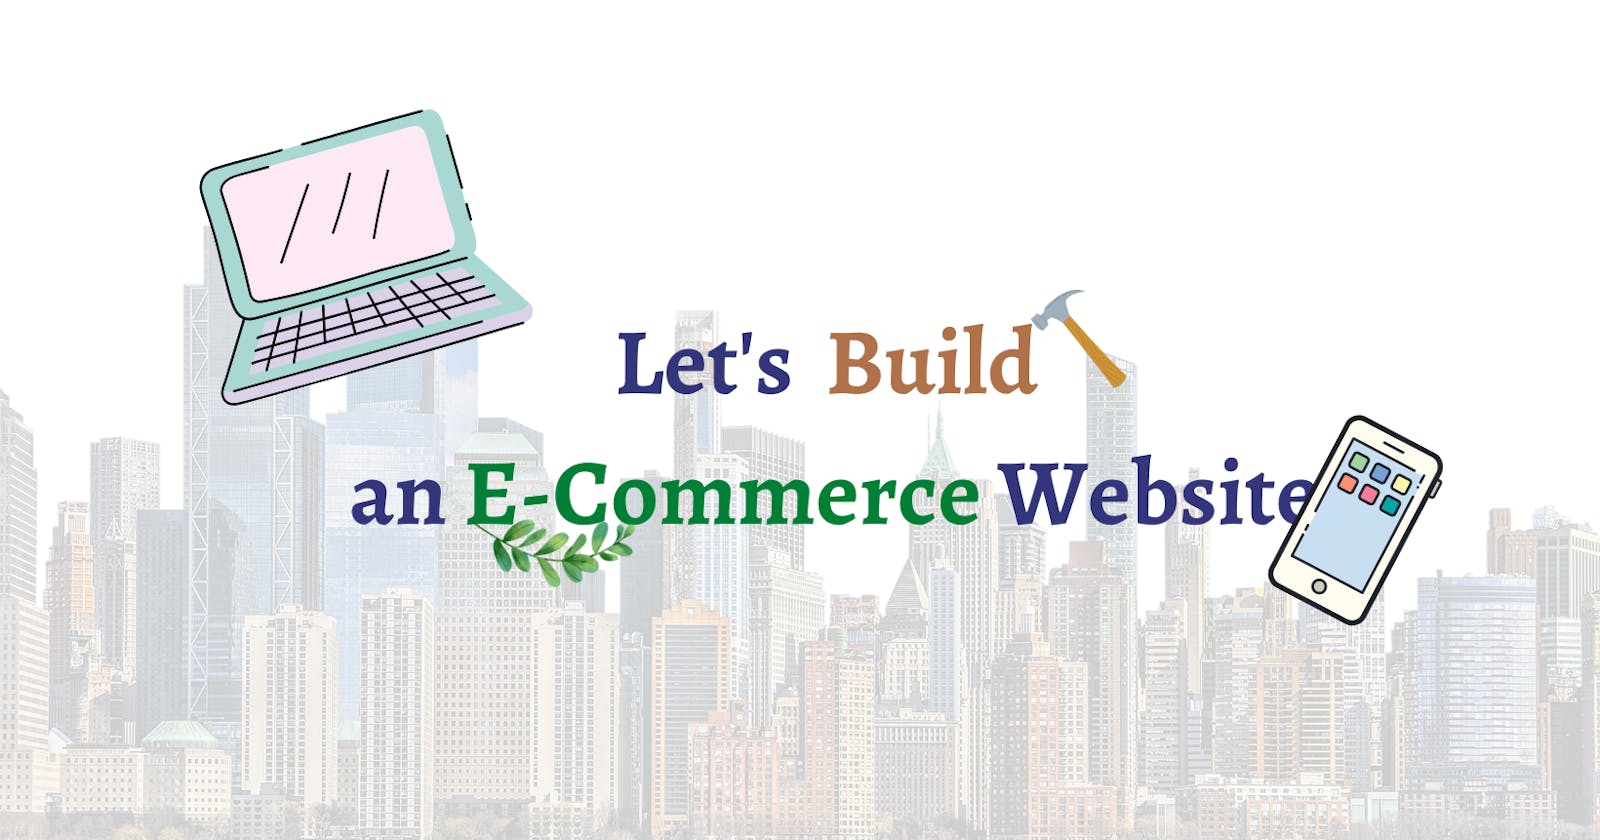 Let's build an E-Commerce Website